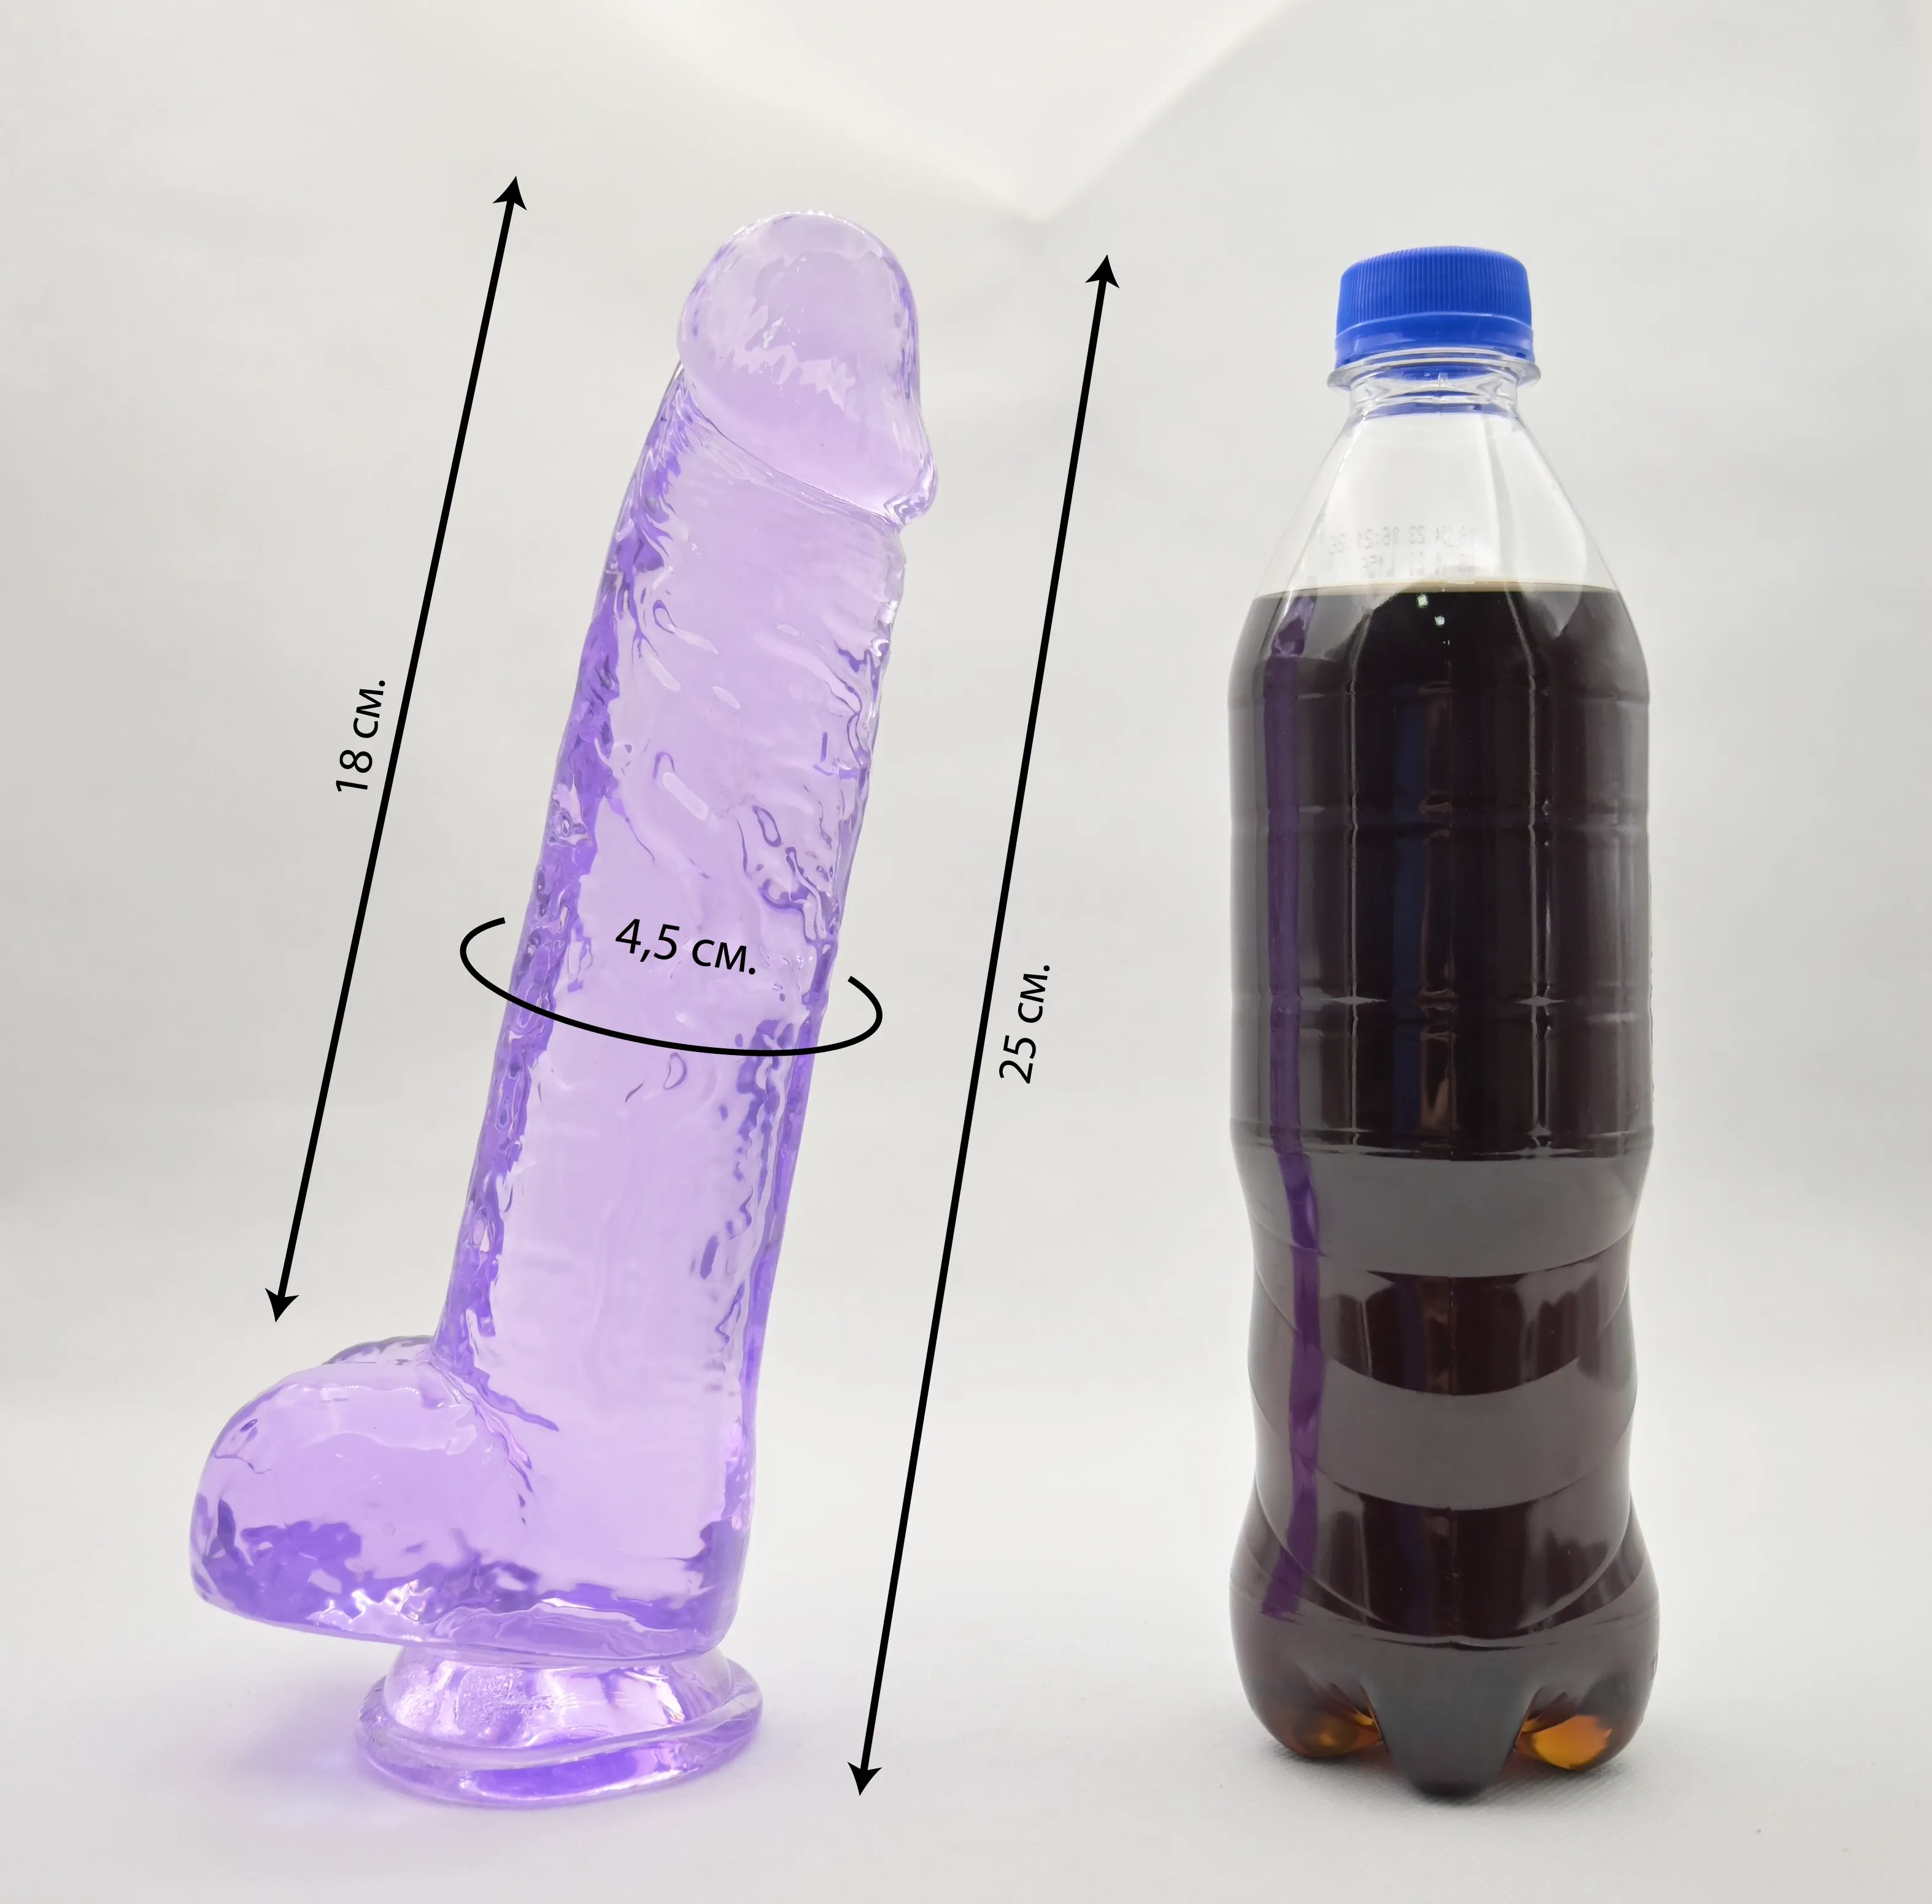 Размеры Realrock 9 и сравнение с бутылкой